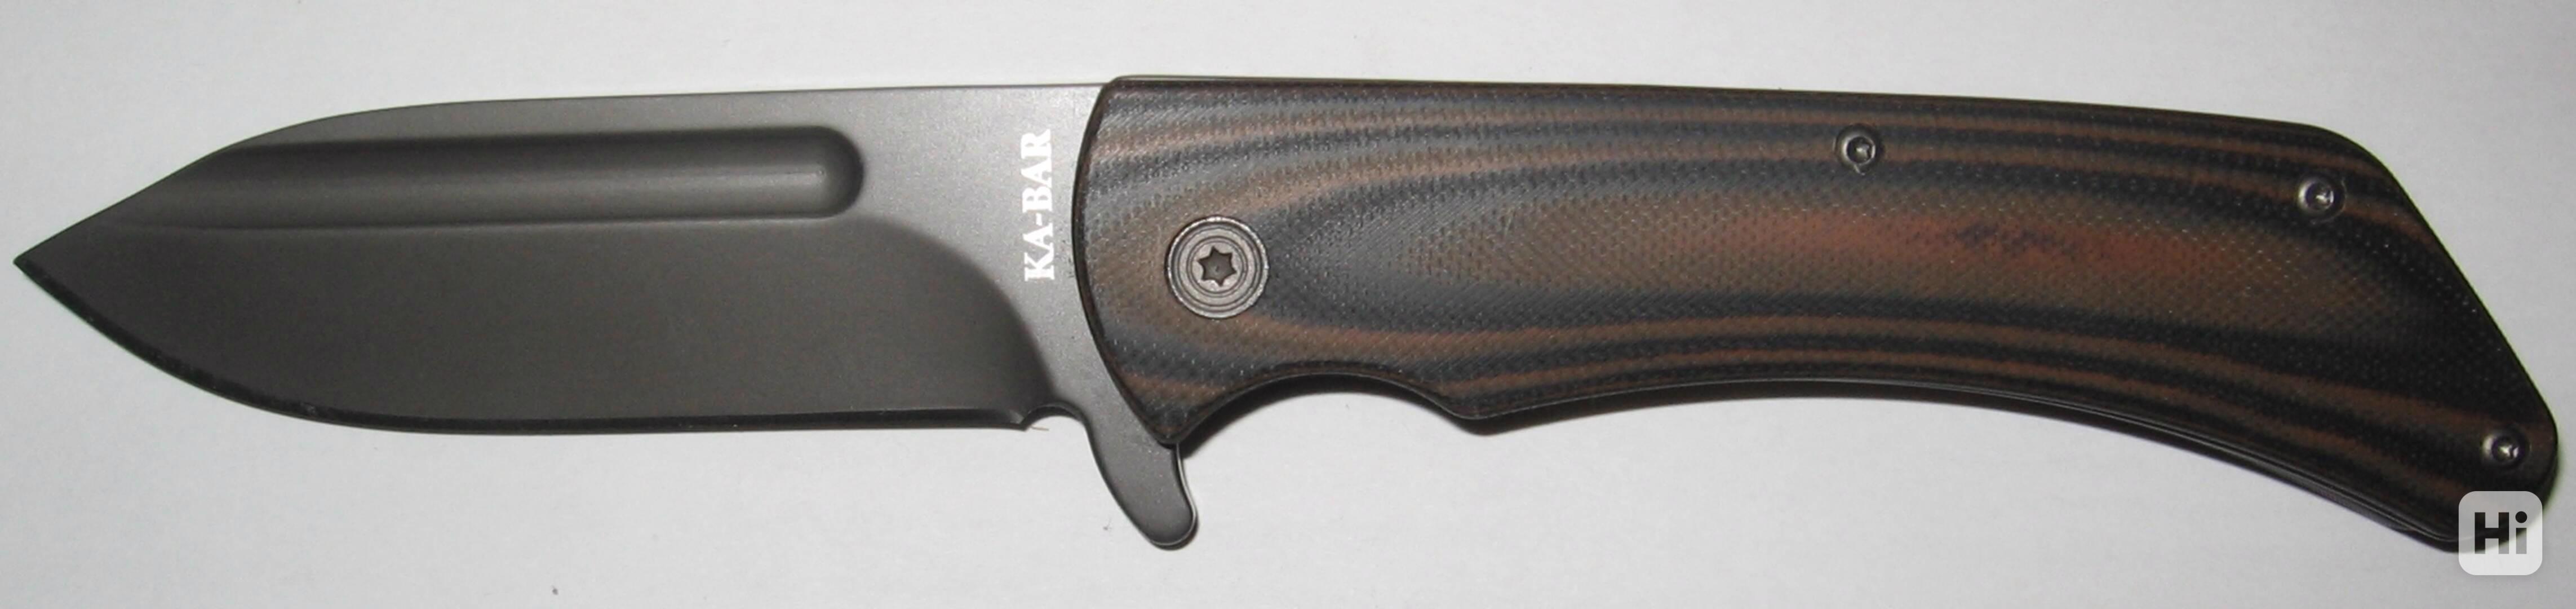 Zavírací nůž KA-BAR Mark 98 - foto 1